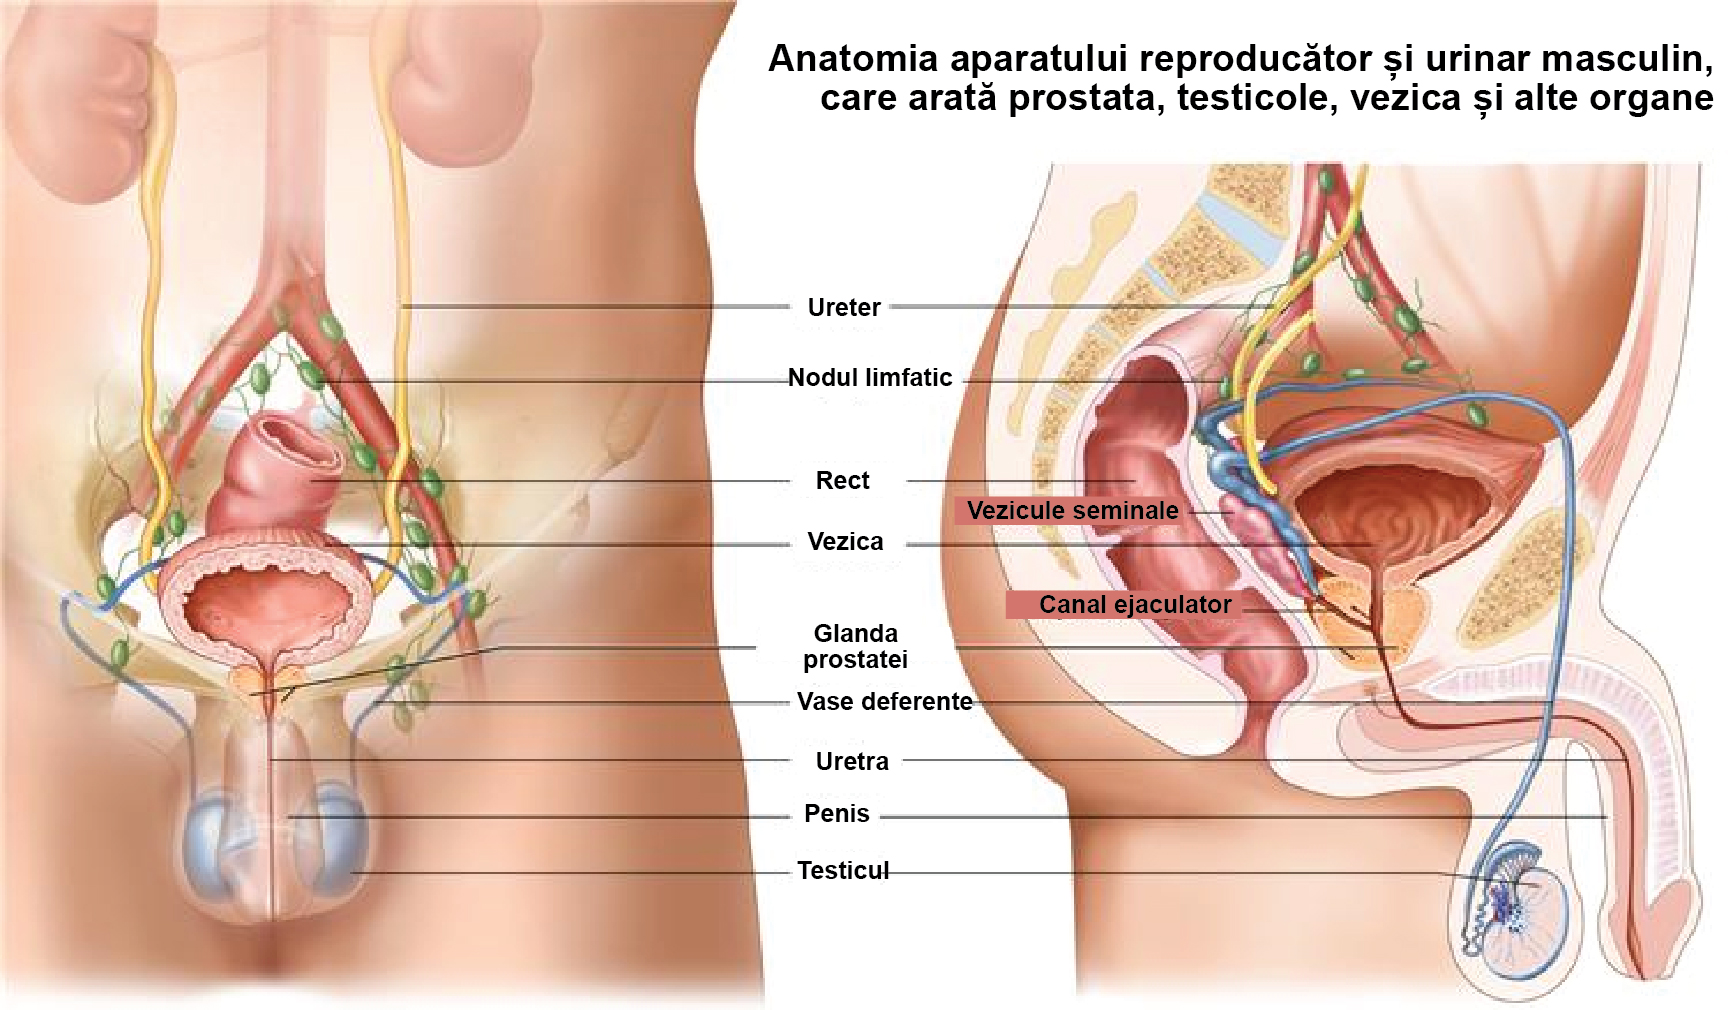 1 Din 2 Bărbați Din România Este Diagnosticat Cu Adenom De Prostată | Libertatea